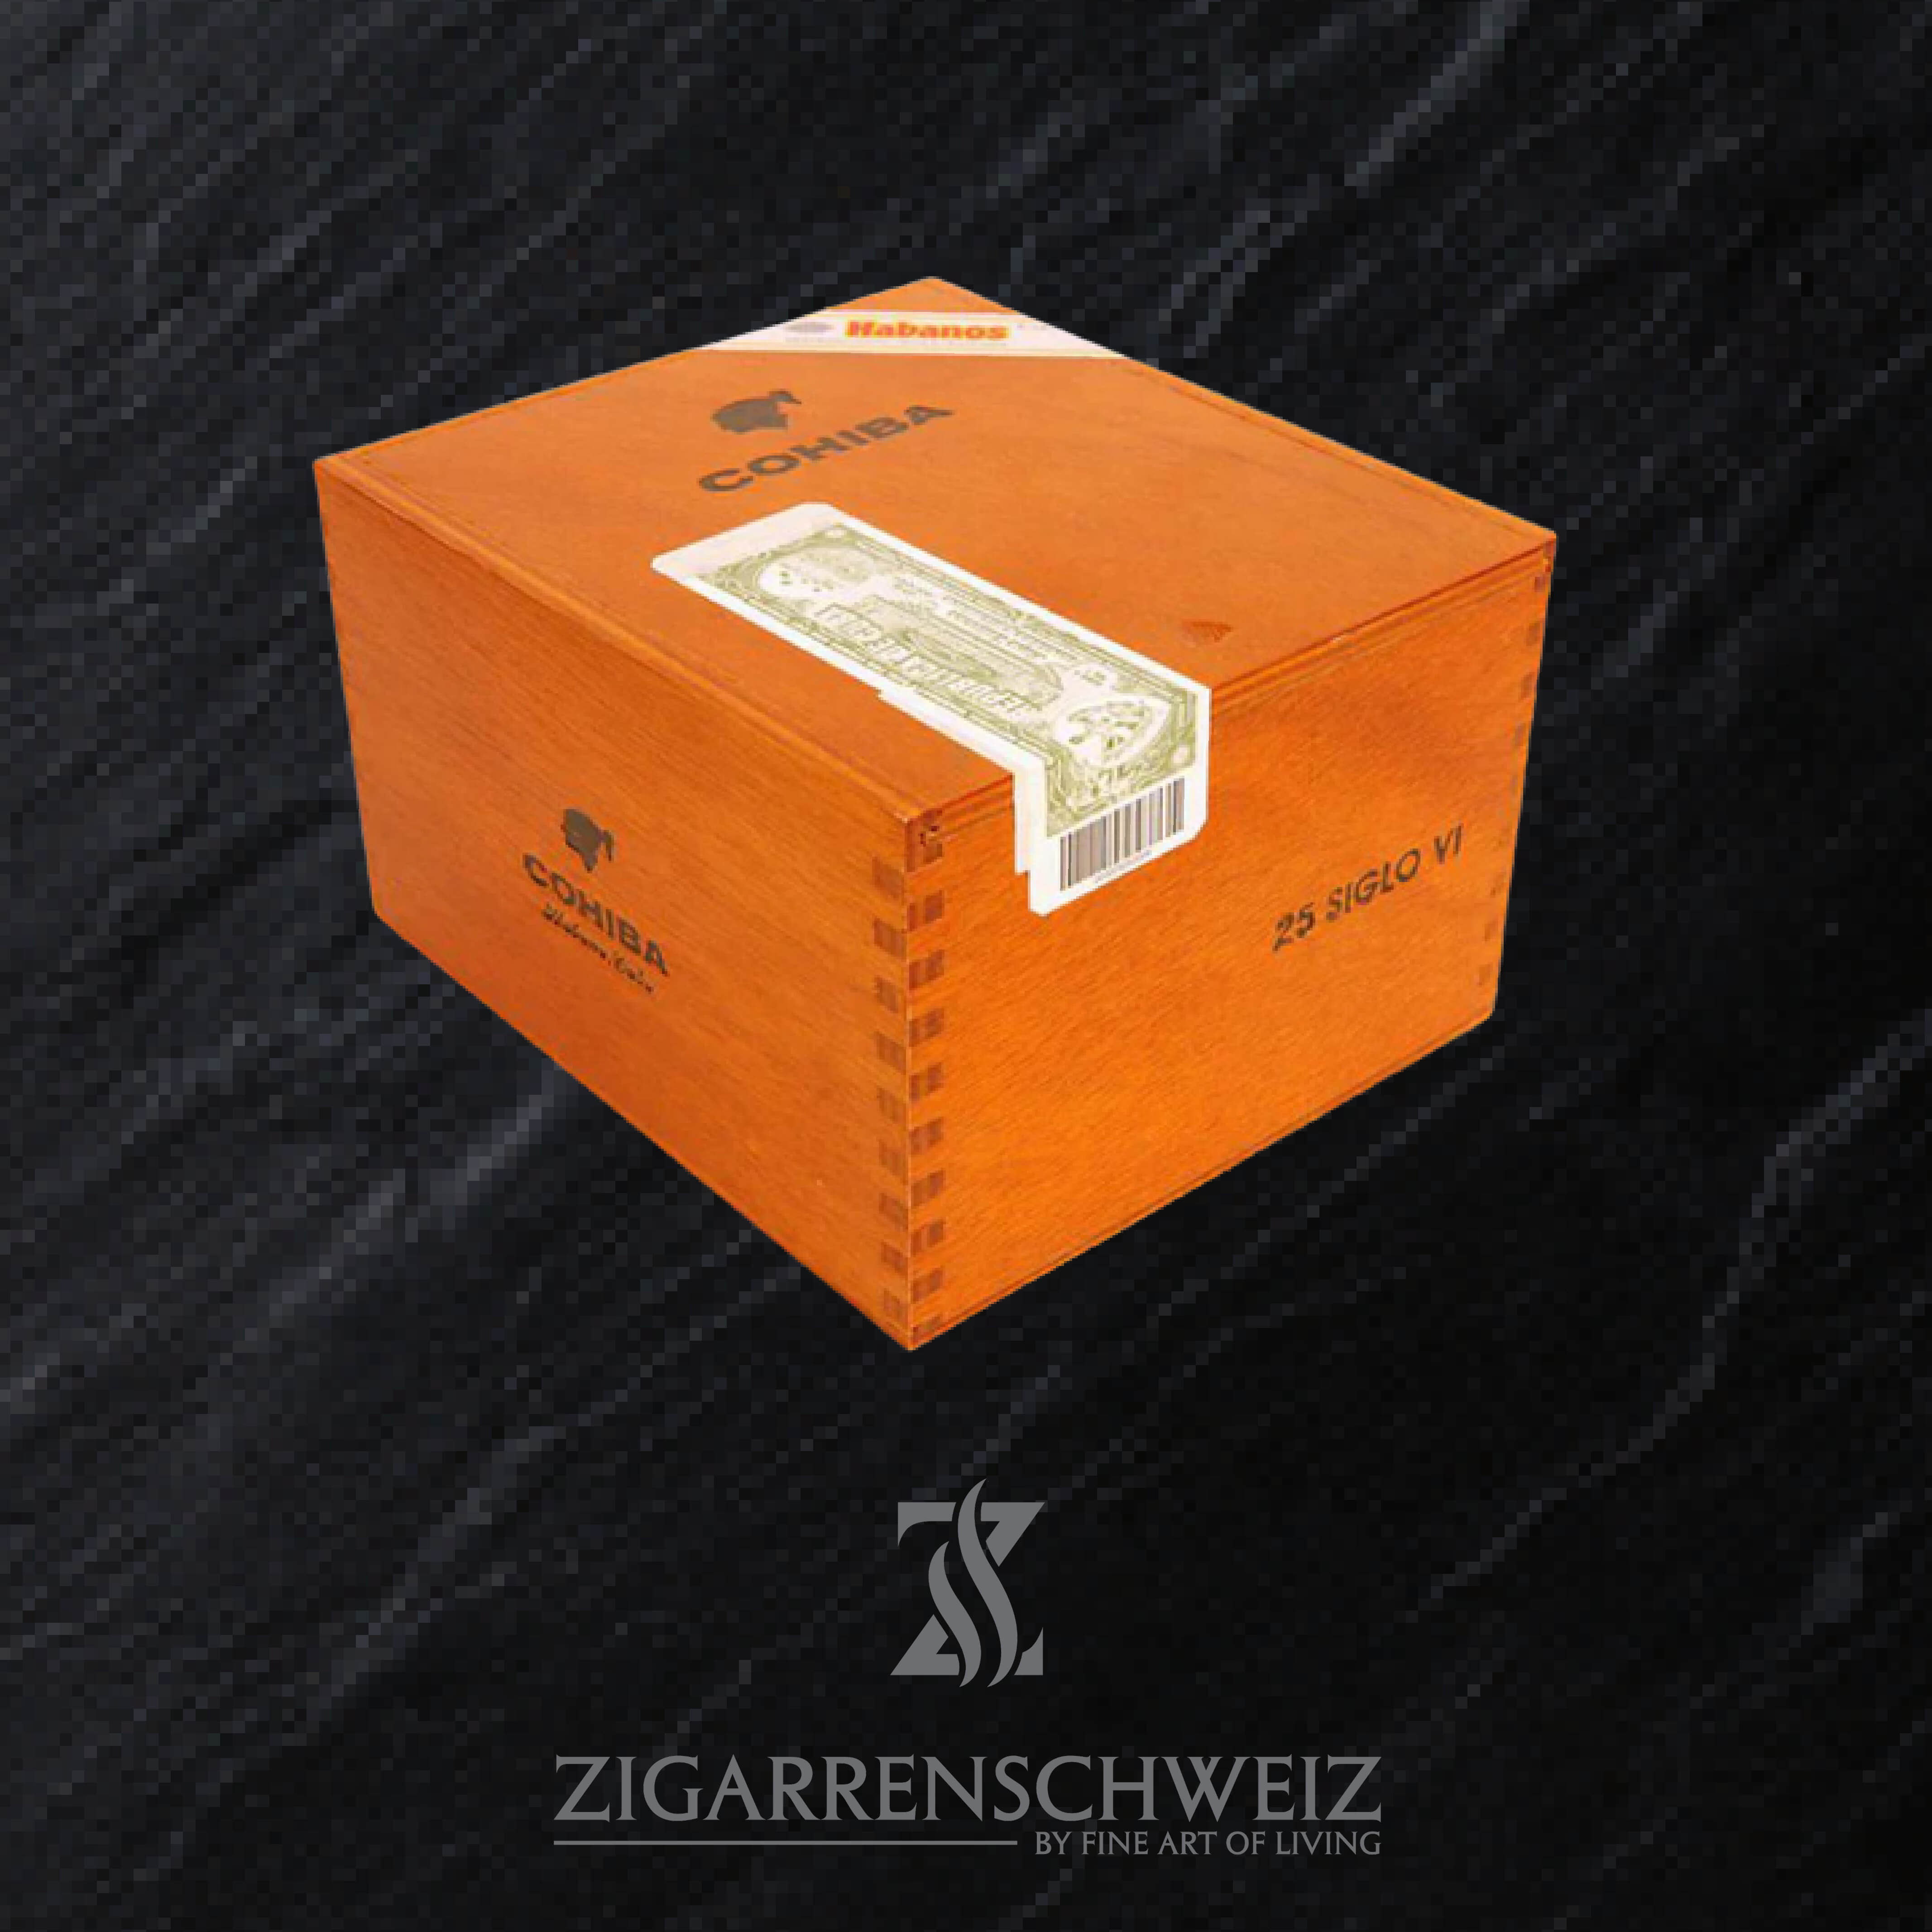 Cohiba Siglo IV (6) Zigarren aus der Linea 1492 von Cohiba - 25er Kiste geschlossen